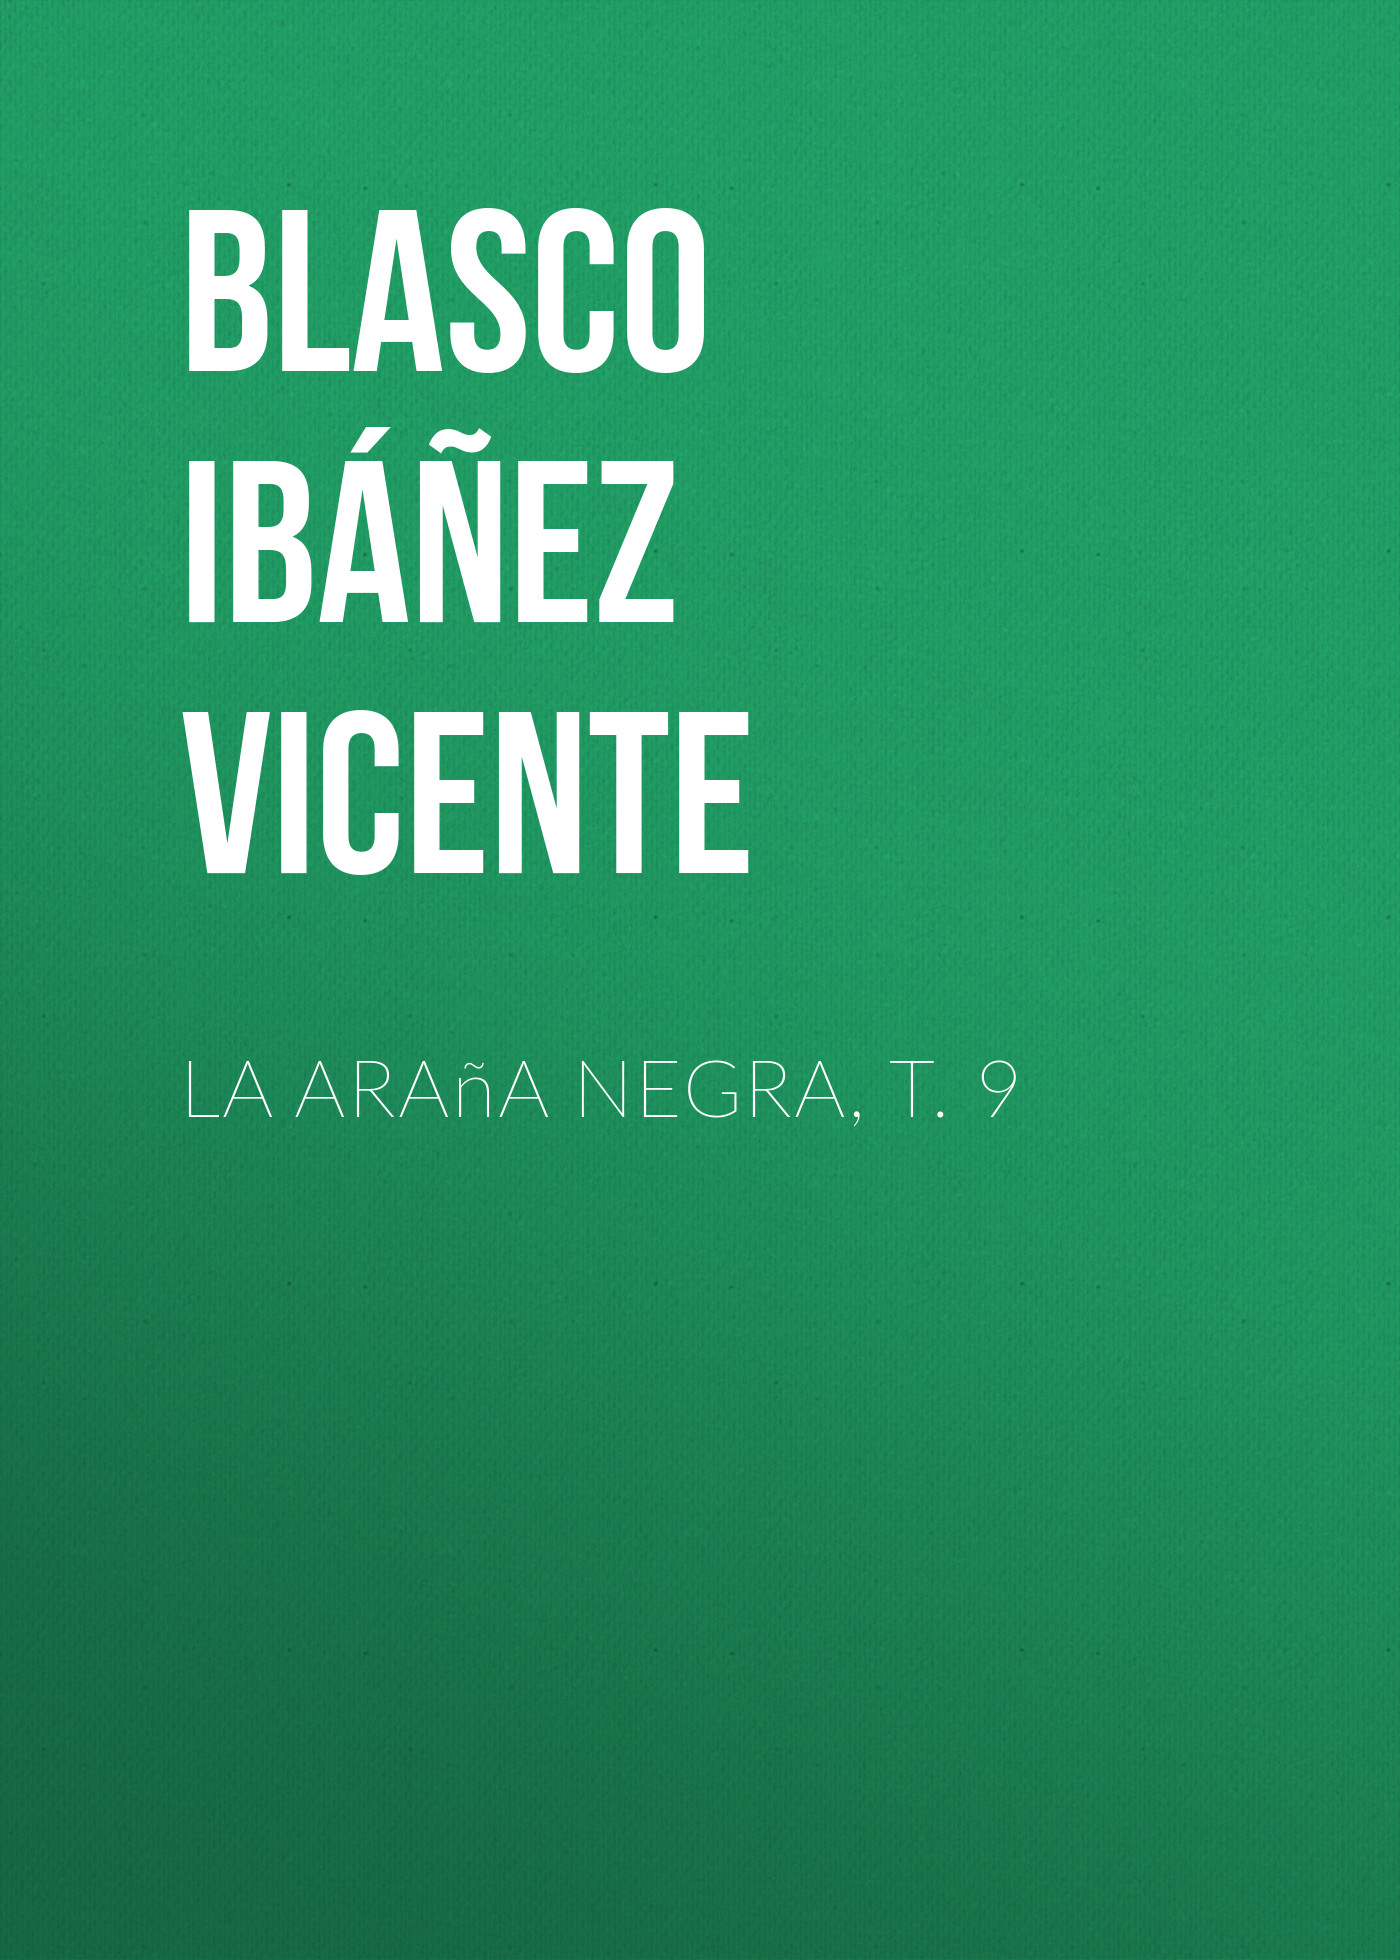 Книга La araña negra, t. 9 из серии , созданная Vicente Blasco Ibáñez, может относится к жанру Зарубежная классика, Зарубежная старинная литература, Иностранные языки. Стоимость электронной книги La araña negra, t. 9 с идентификатором 24178868 составляет 0 руб.